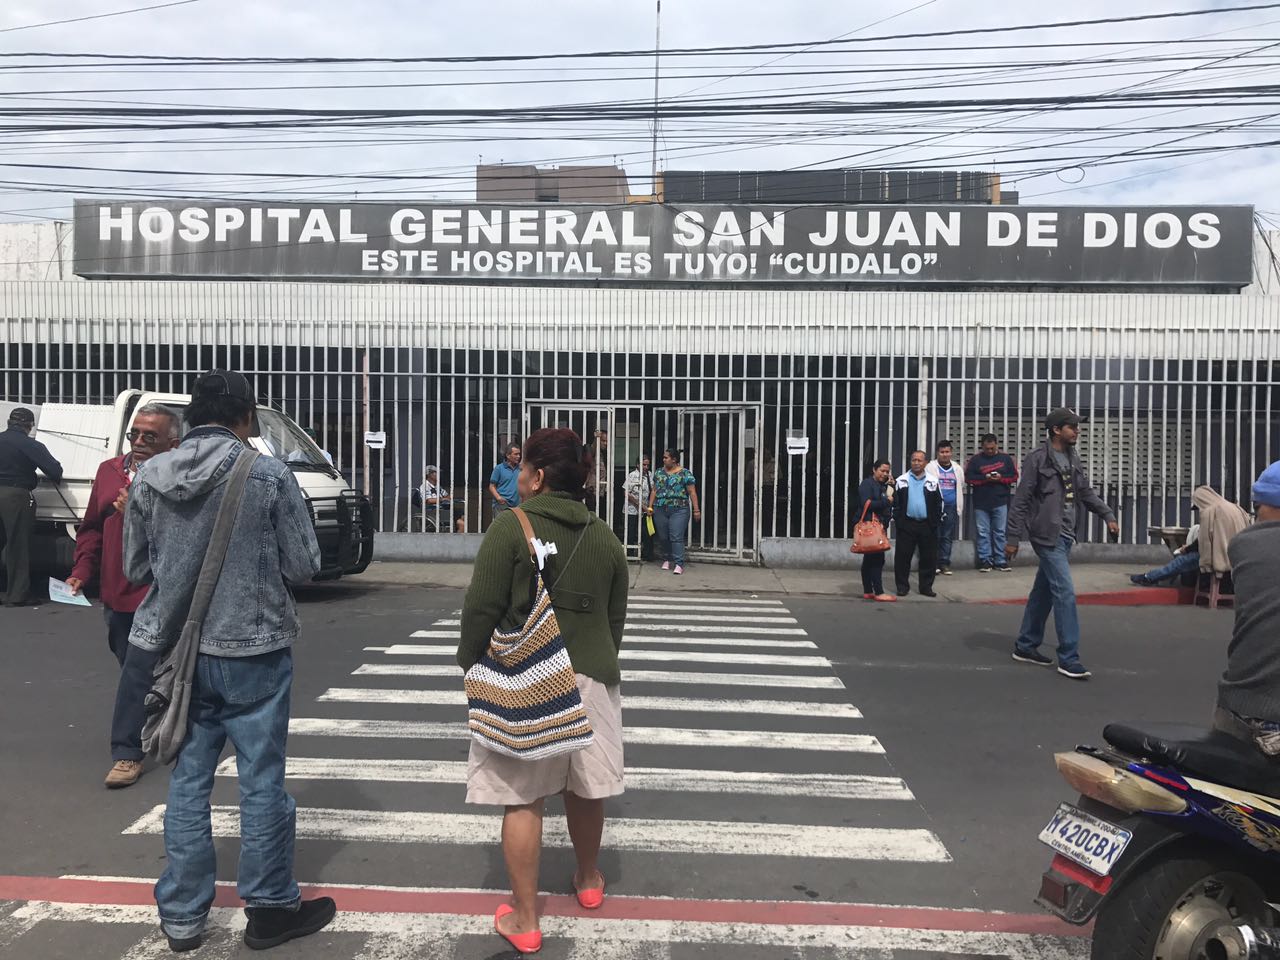 Hospital General San Juan de Dios restablece sus visitas. Hospitales.